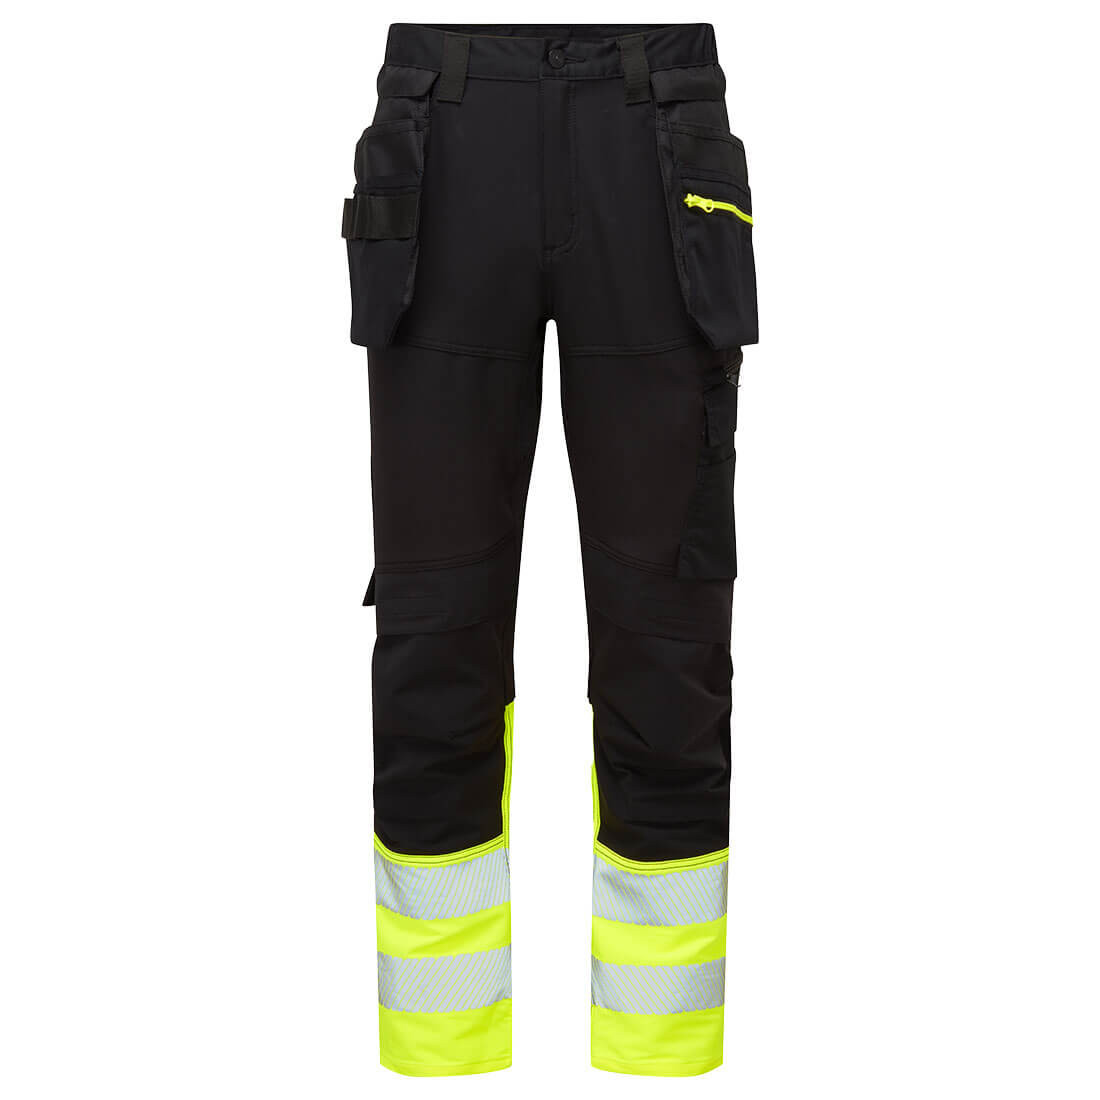 Pantalón Craft DX4 de alta visibilidad, clase 1 - Ropa de protección